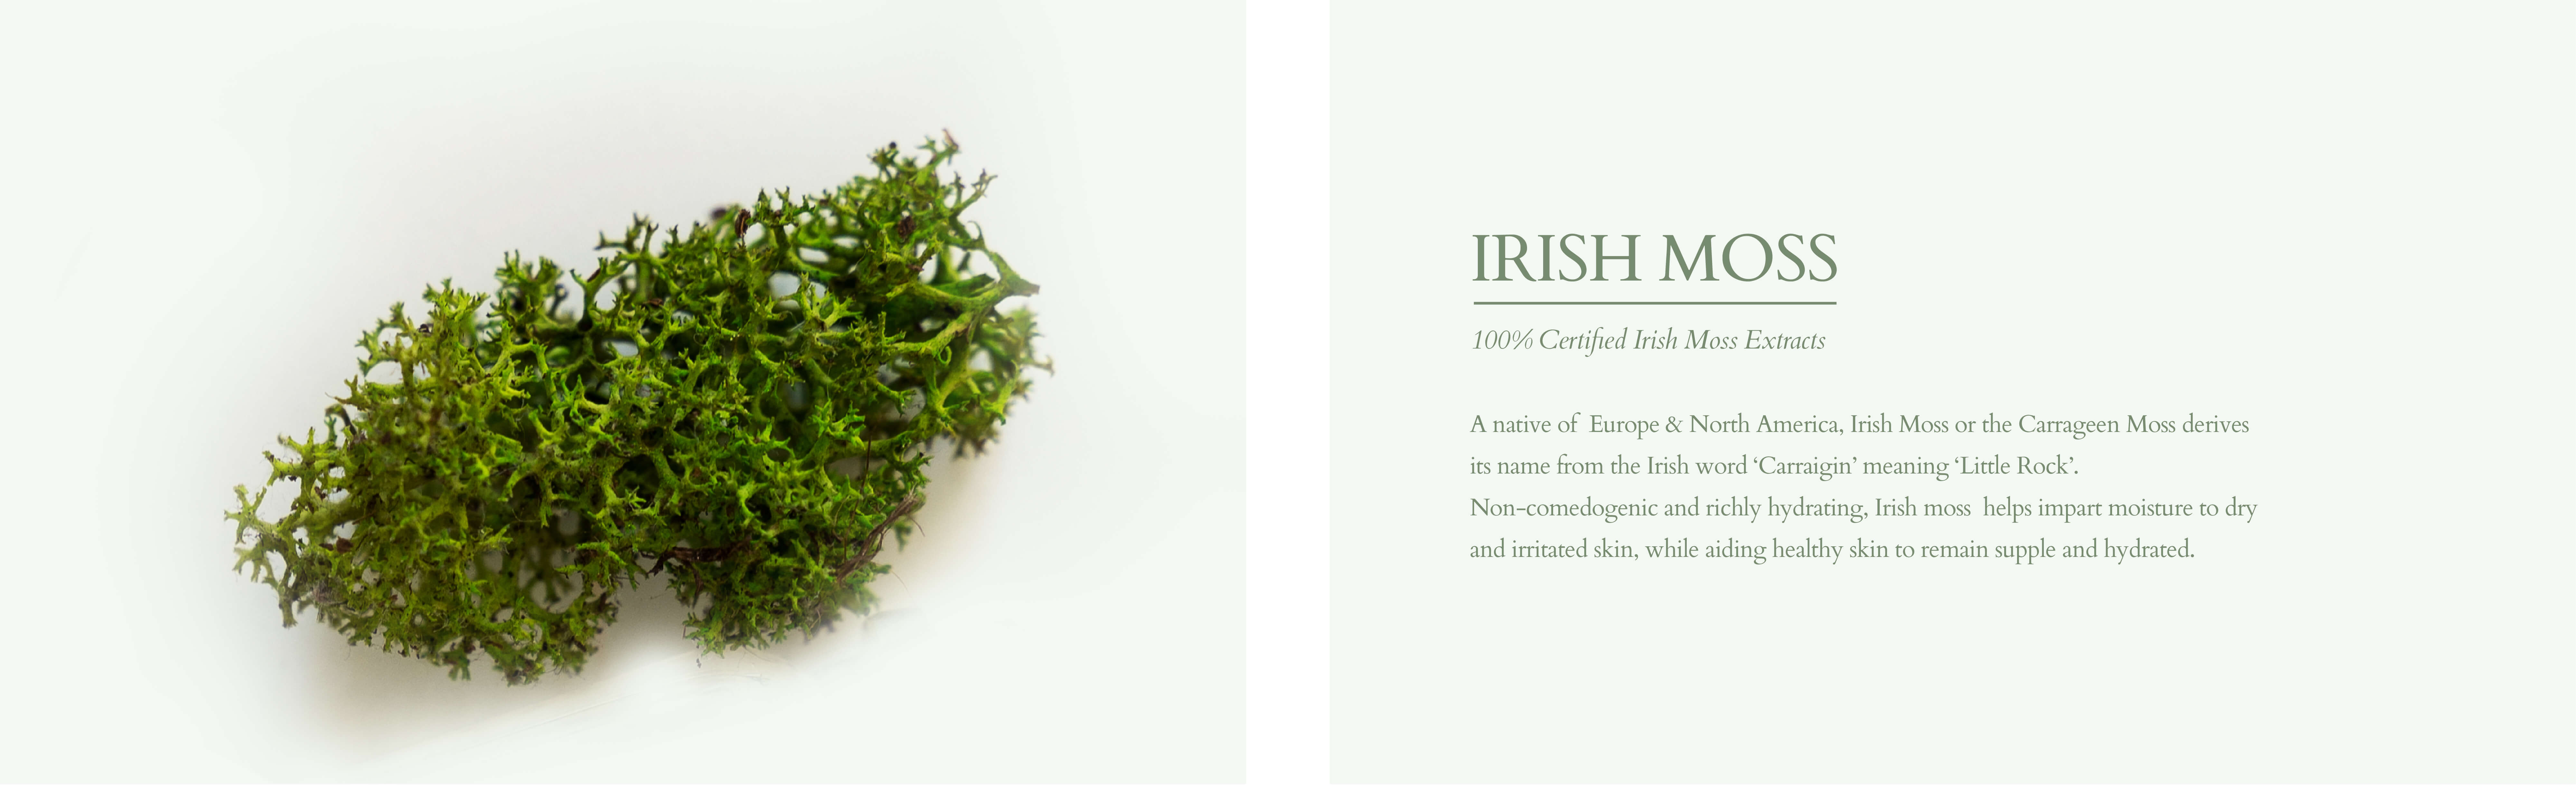 Irish moss for dry and irrited skin